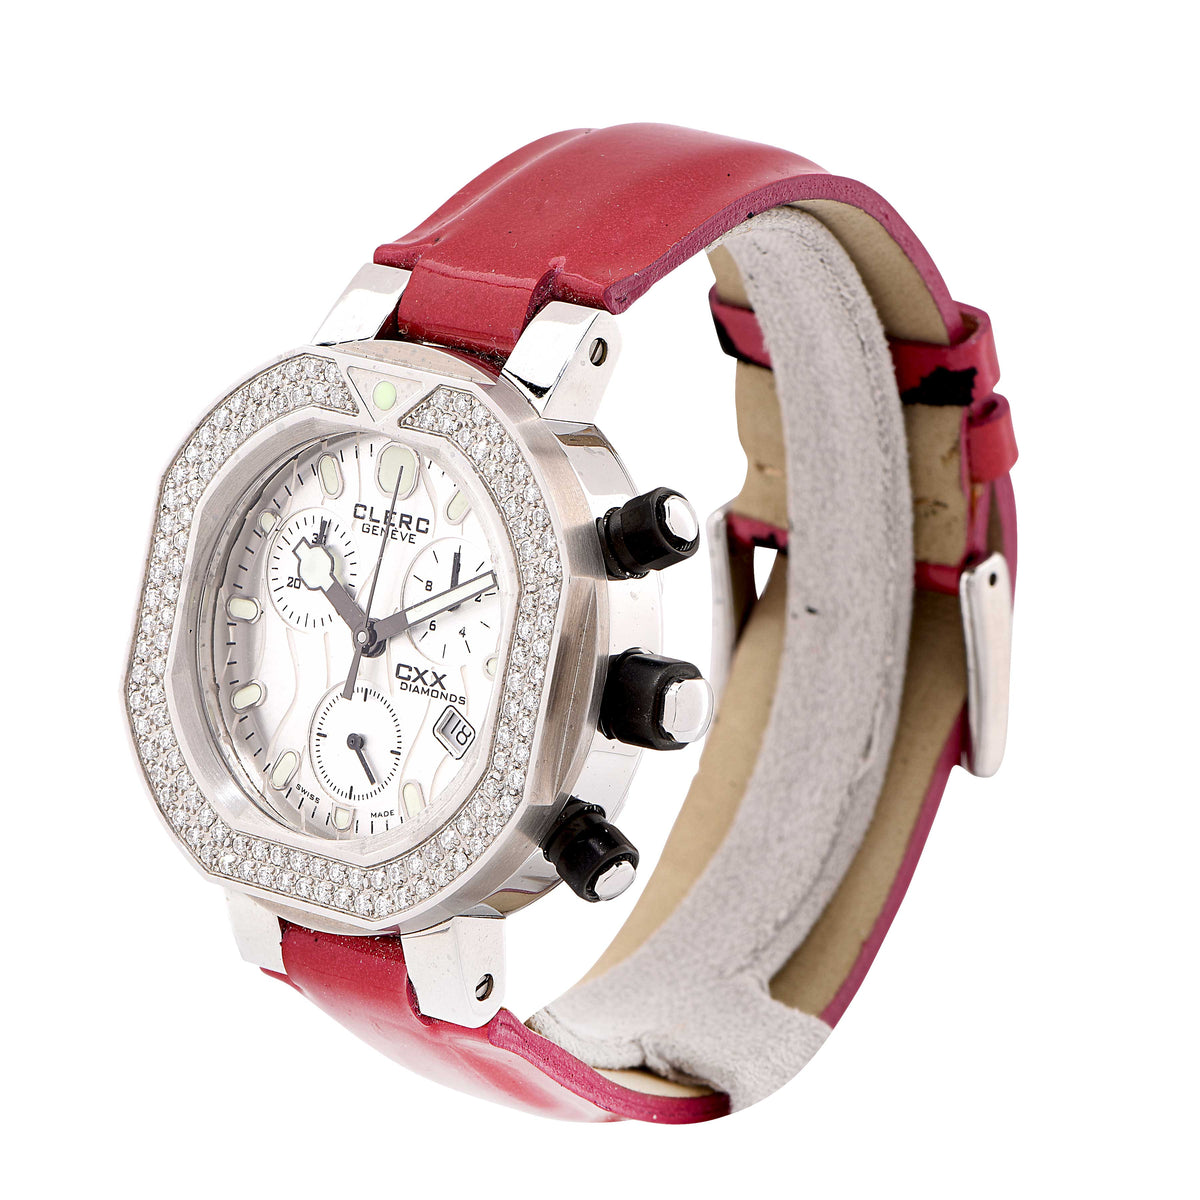 Clerc Ladies CXX Diamonds with Diamond Bezel Wristwatch